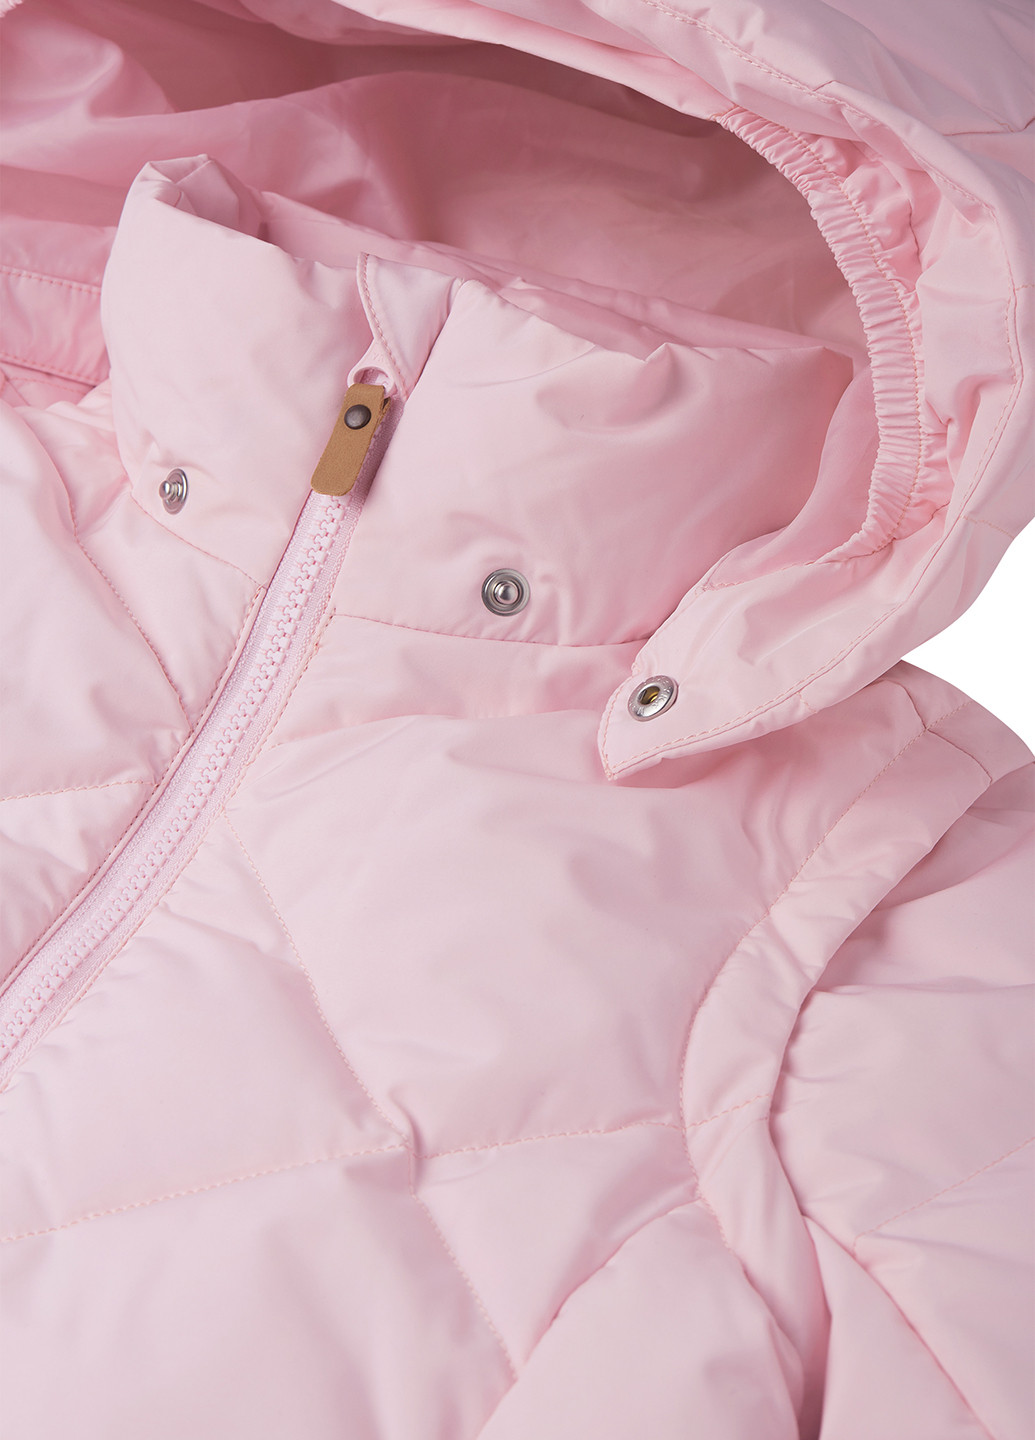 Розовая зимняя куртка пуховая 2в1 Reima Paahto